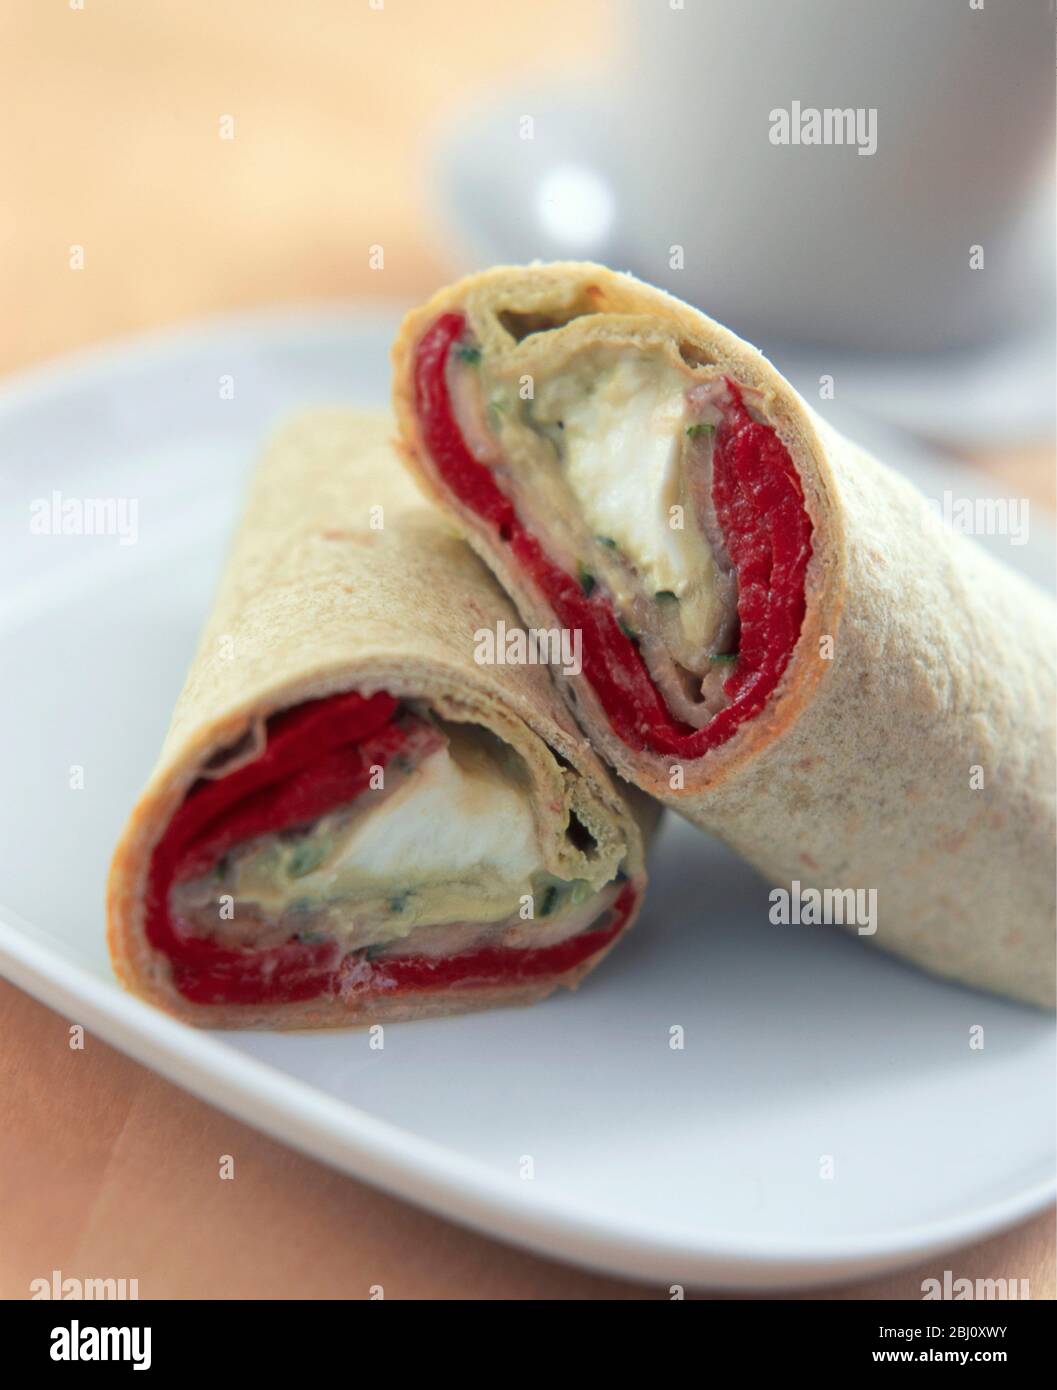 Wrap Sandwich in zwei geschnitten auf weißem Teller mit Tasse und Untertasse dahinter angeordnet - Stockfoto